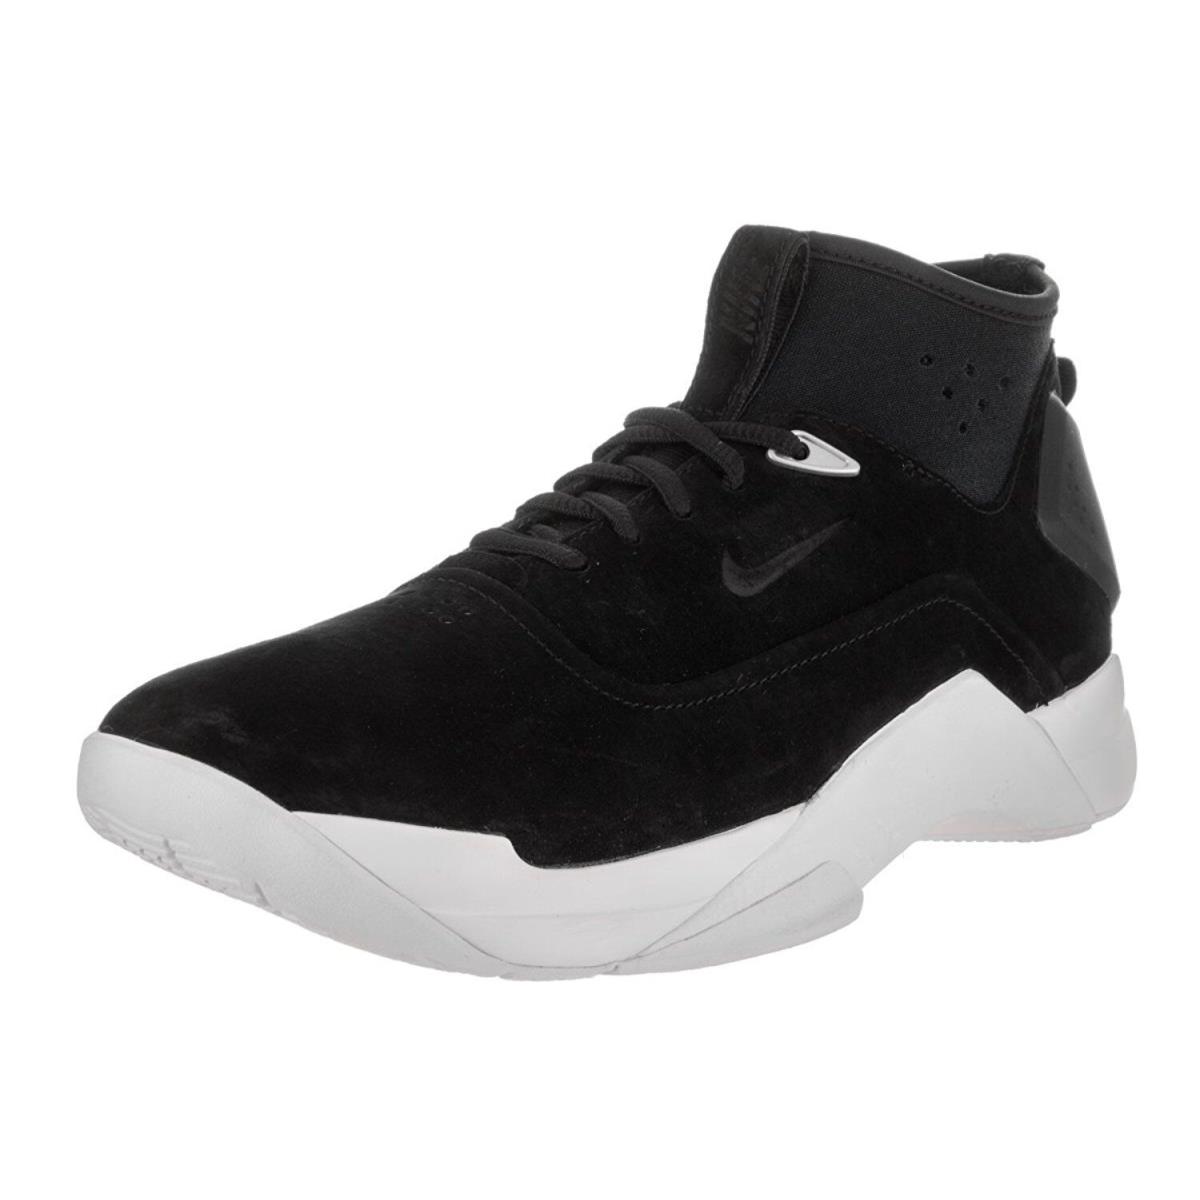 Nike Men`s sz Size 7 Hyperdunk Low Lux Basketball Shoe Black White 864022 001